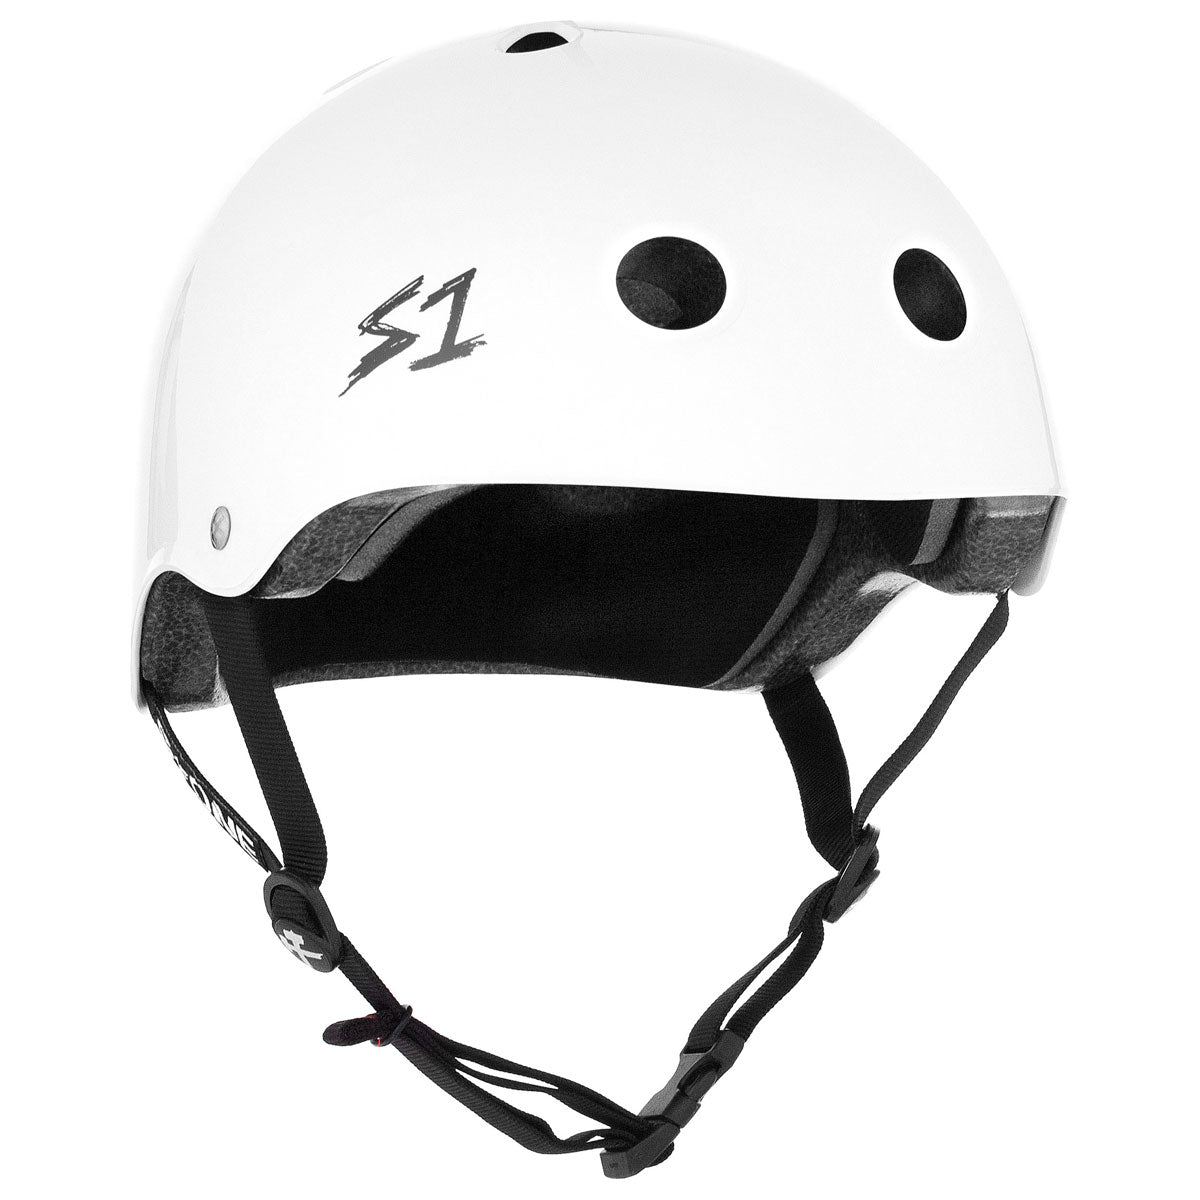 S-One Lifer Helmet - White Gloss image 1